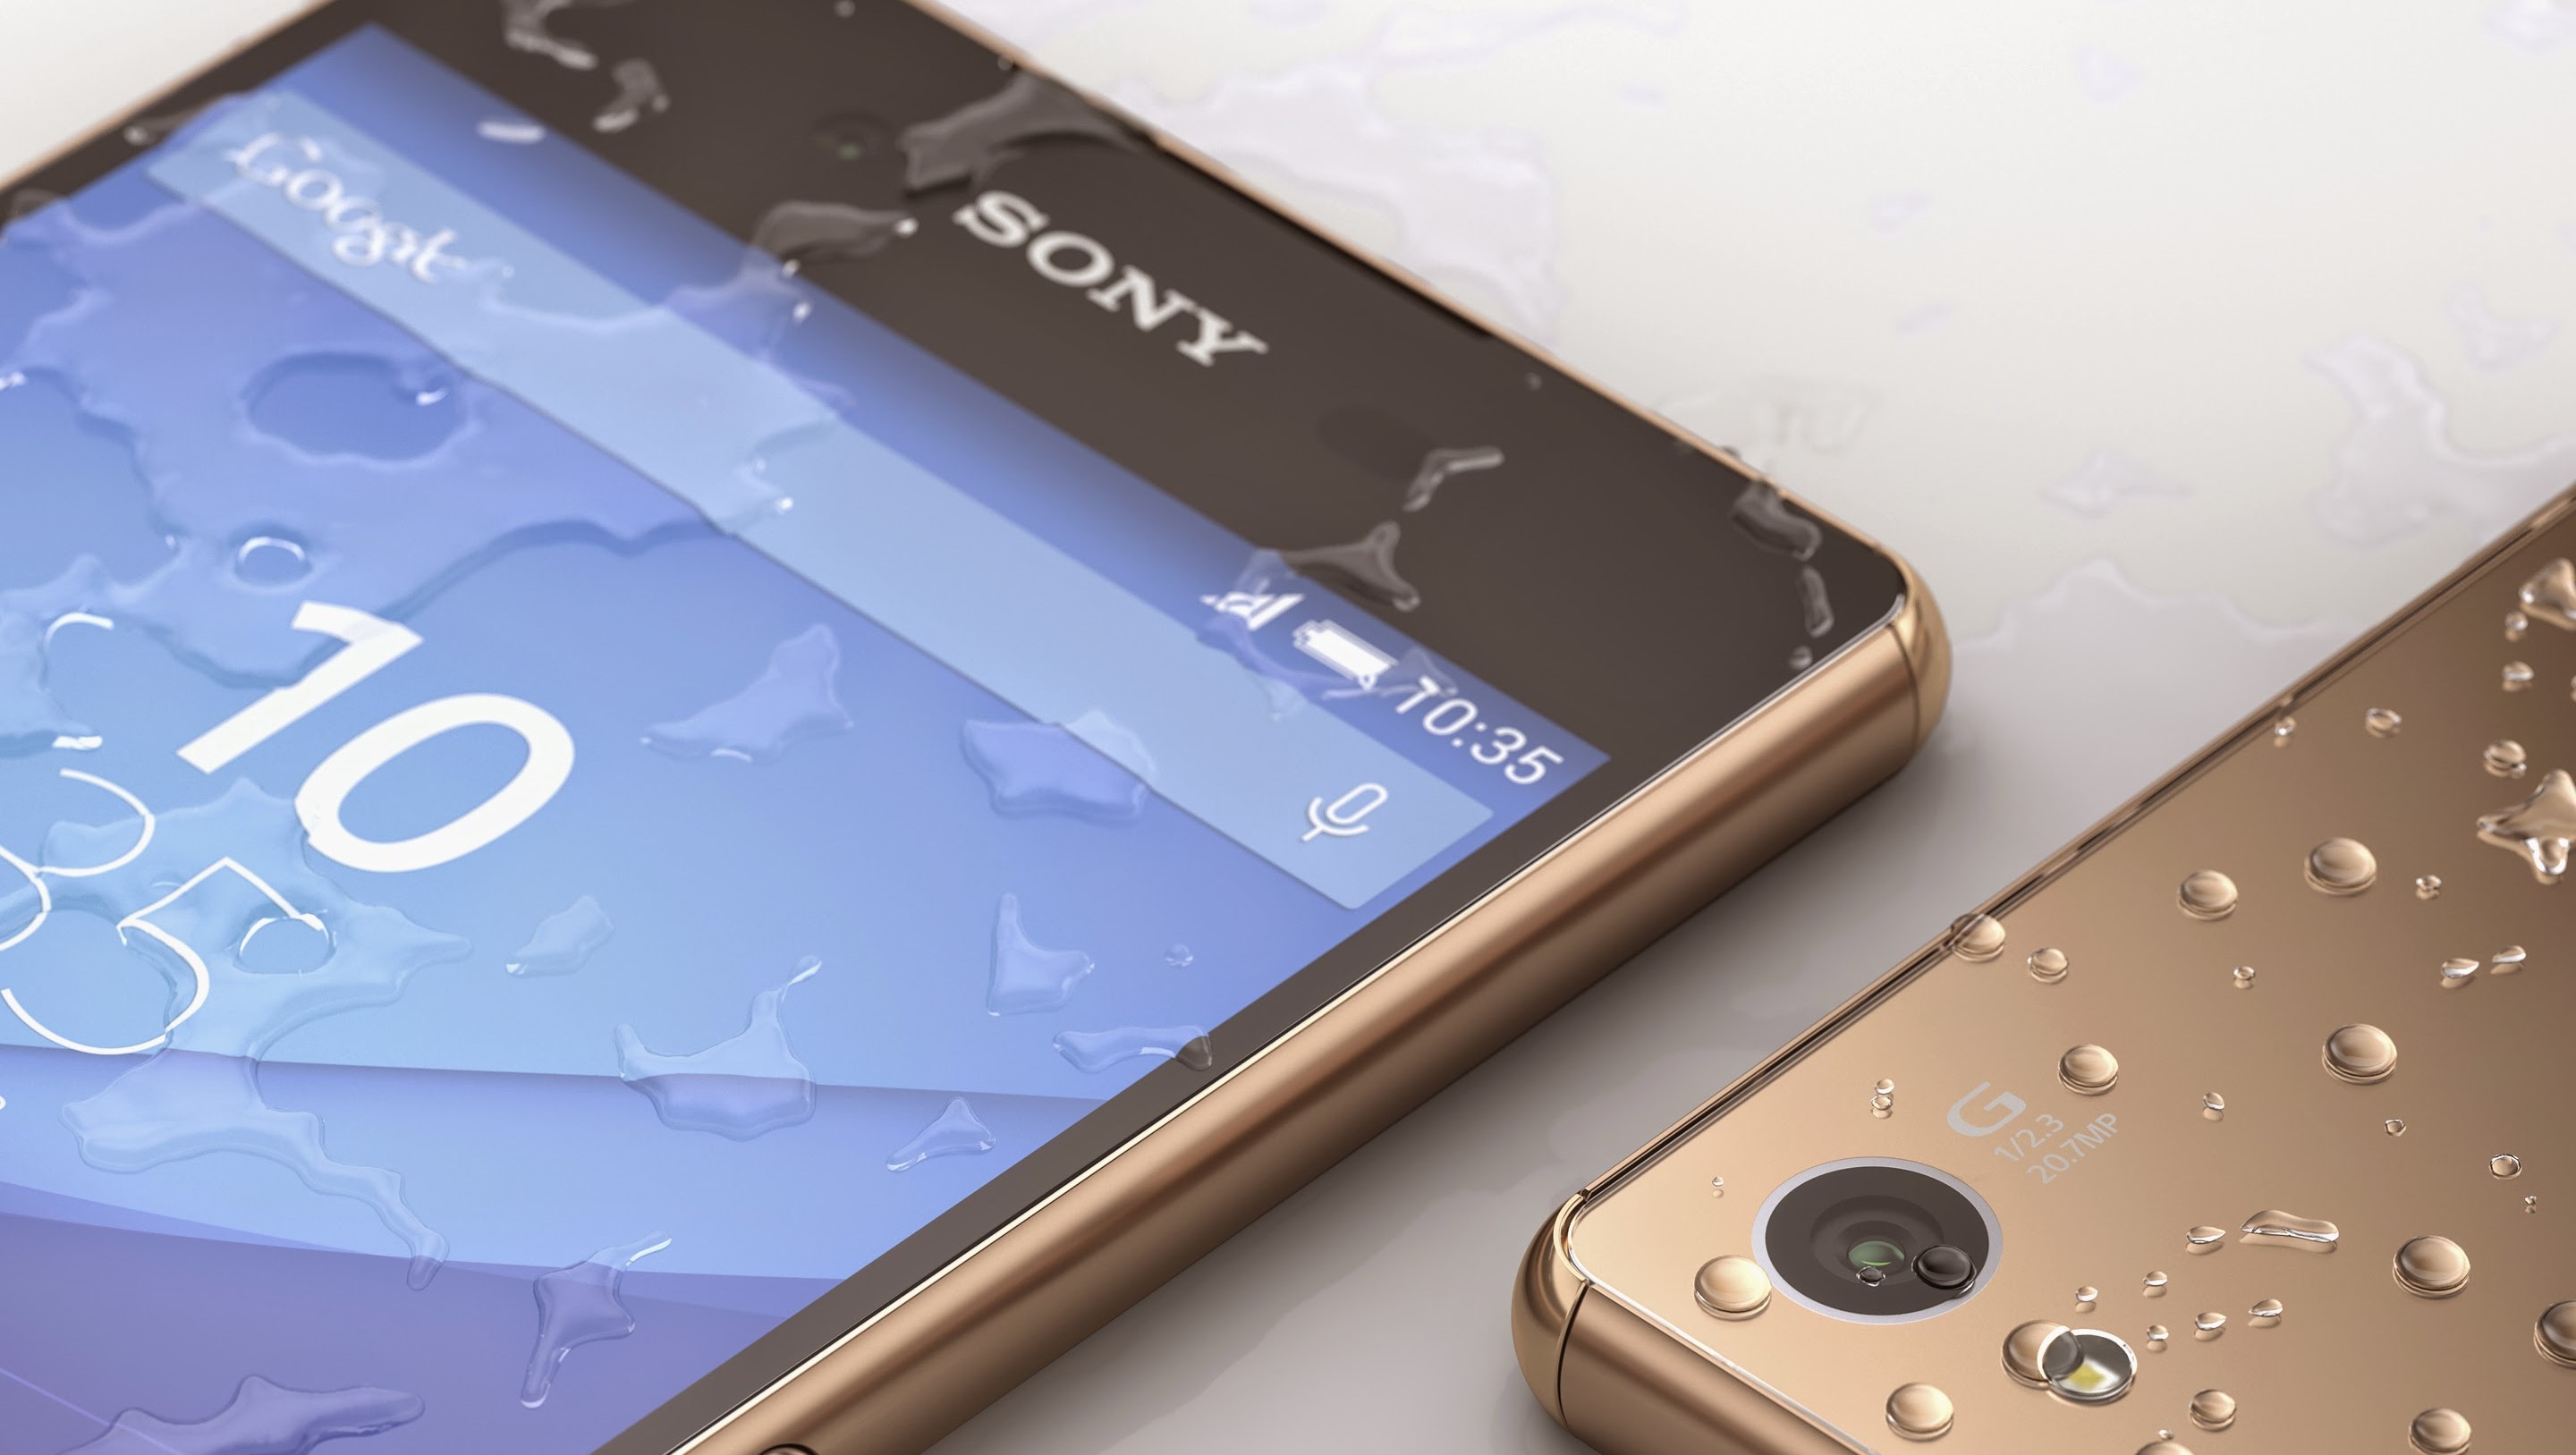 Xperia-telefonene blir først ute med Android 7.1.1-oppdateringen, sier utviklerteamet.